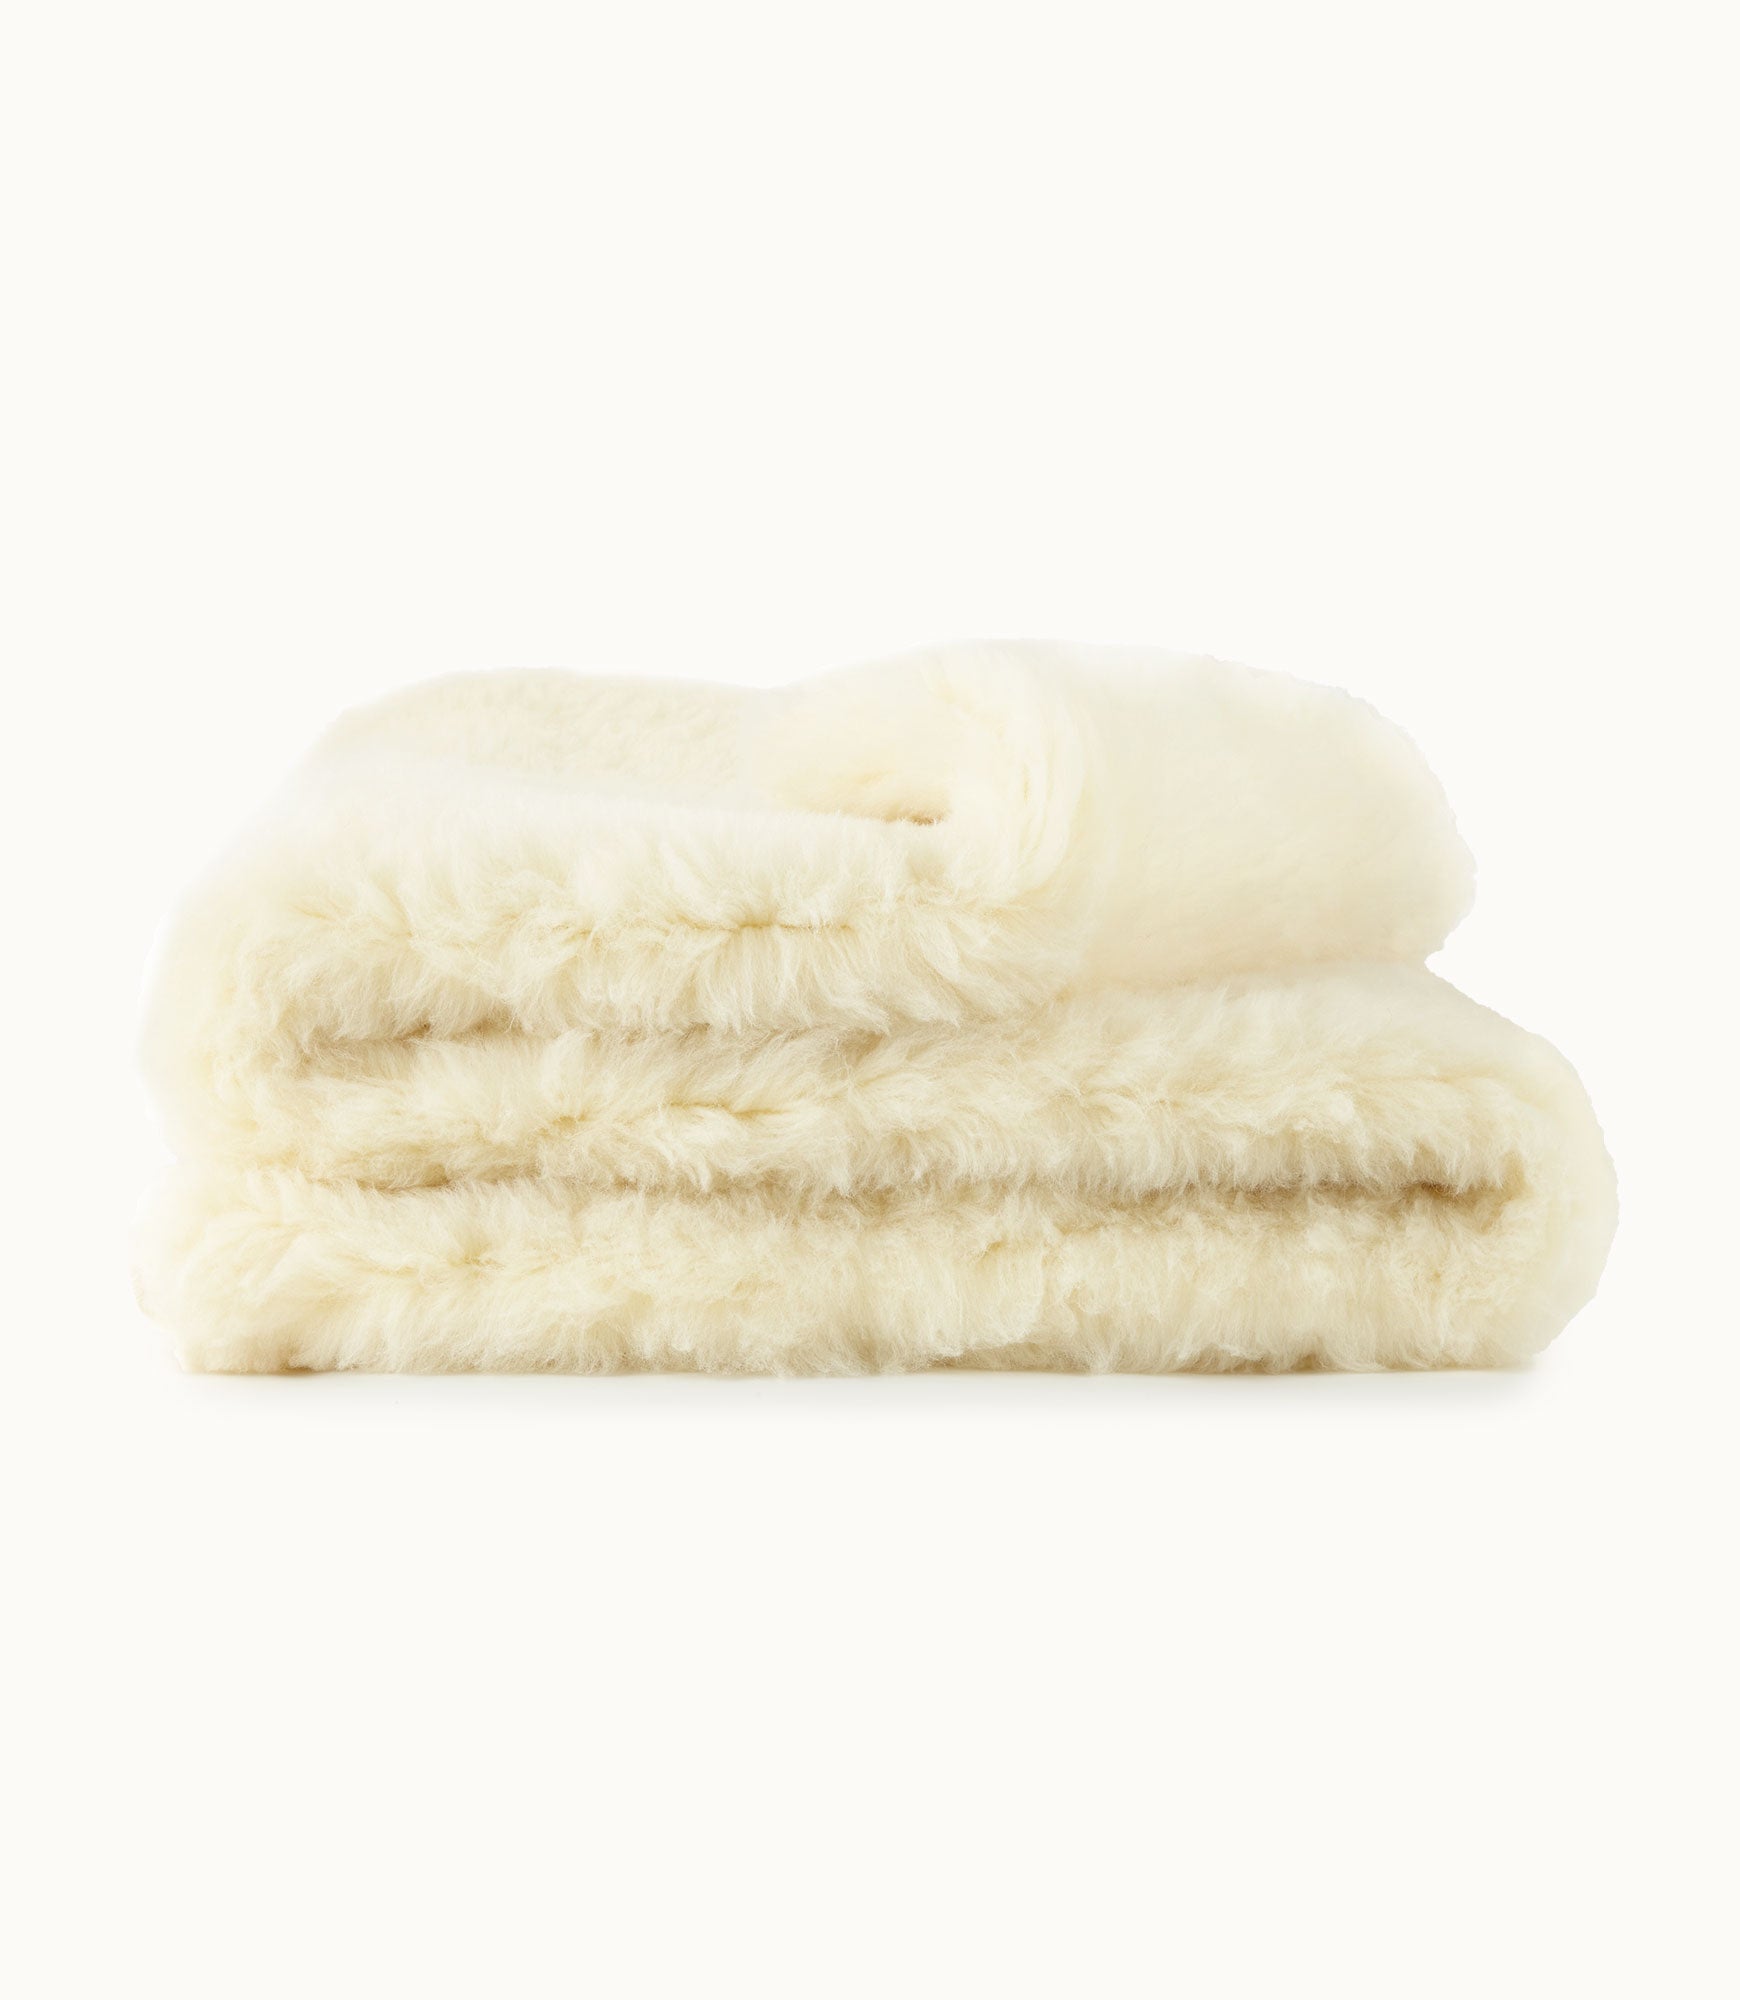 natural wool mattress topper